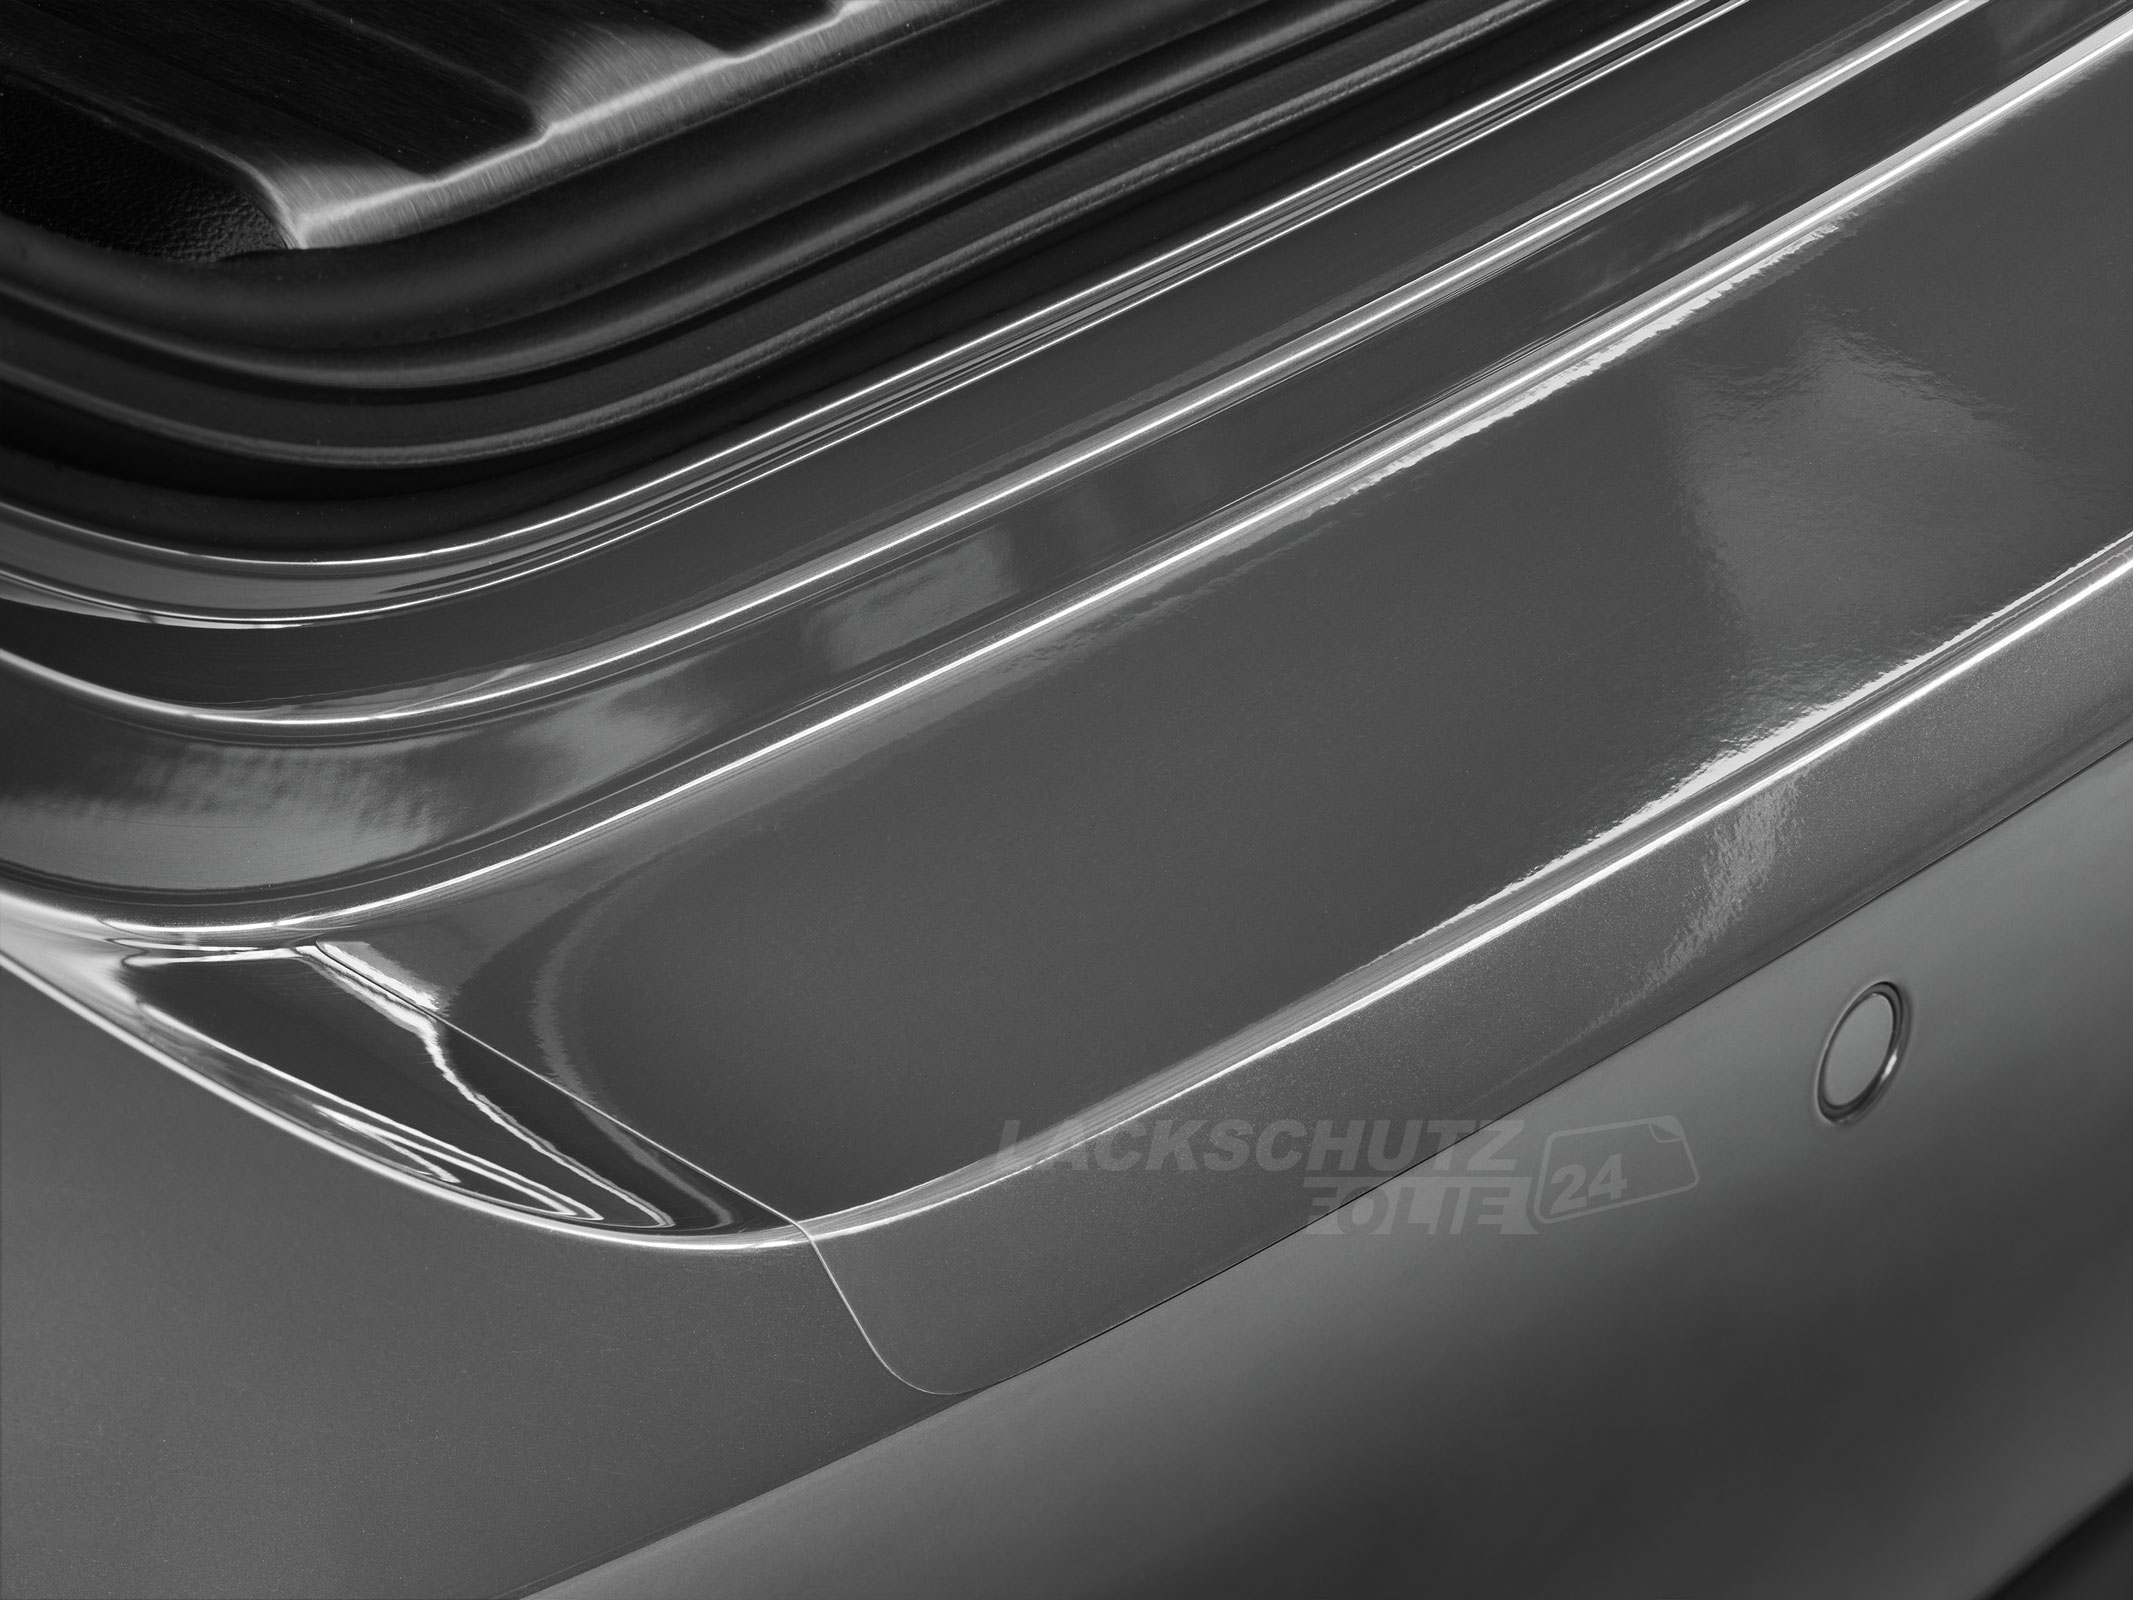 Ladekantenschutzfolie - Transparent Glatt Hochglänzend 150 µm stark für Mitsubishi Lancer Sportback Typ CY0, BJ 2008-2017